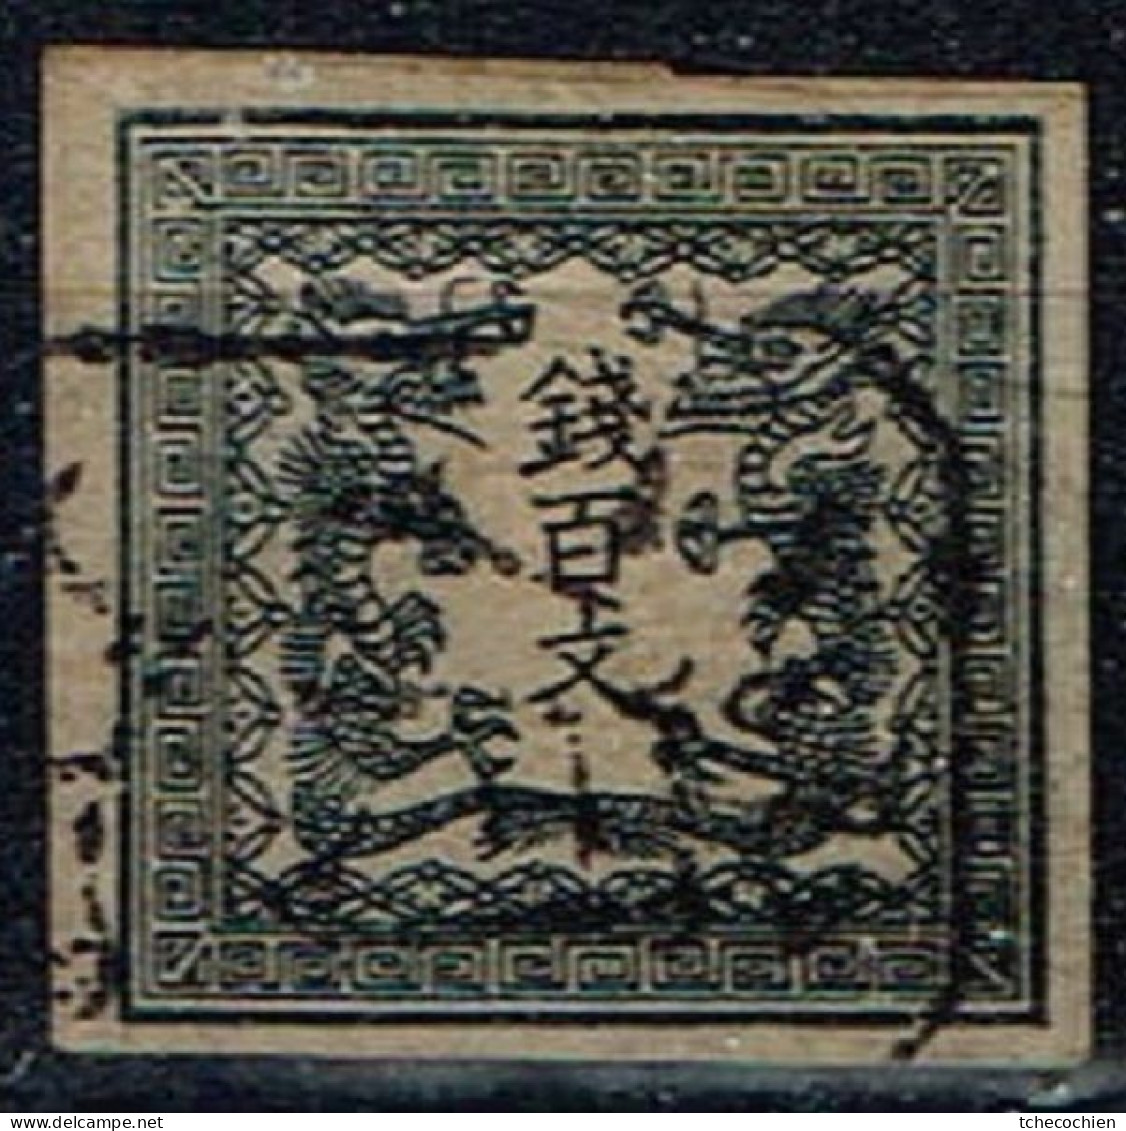 Japon - 1871 - Y&T N° 2 B, Oblitéré. Papier Mince Uni. - Oblitérés